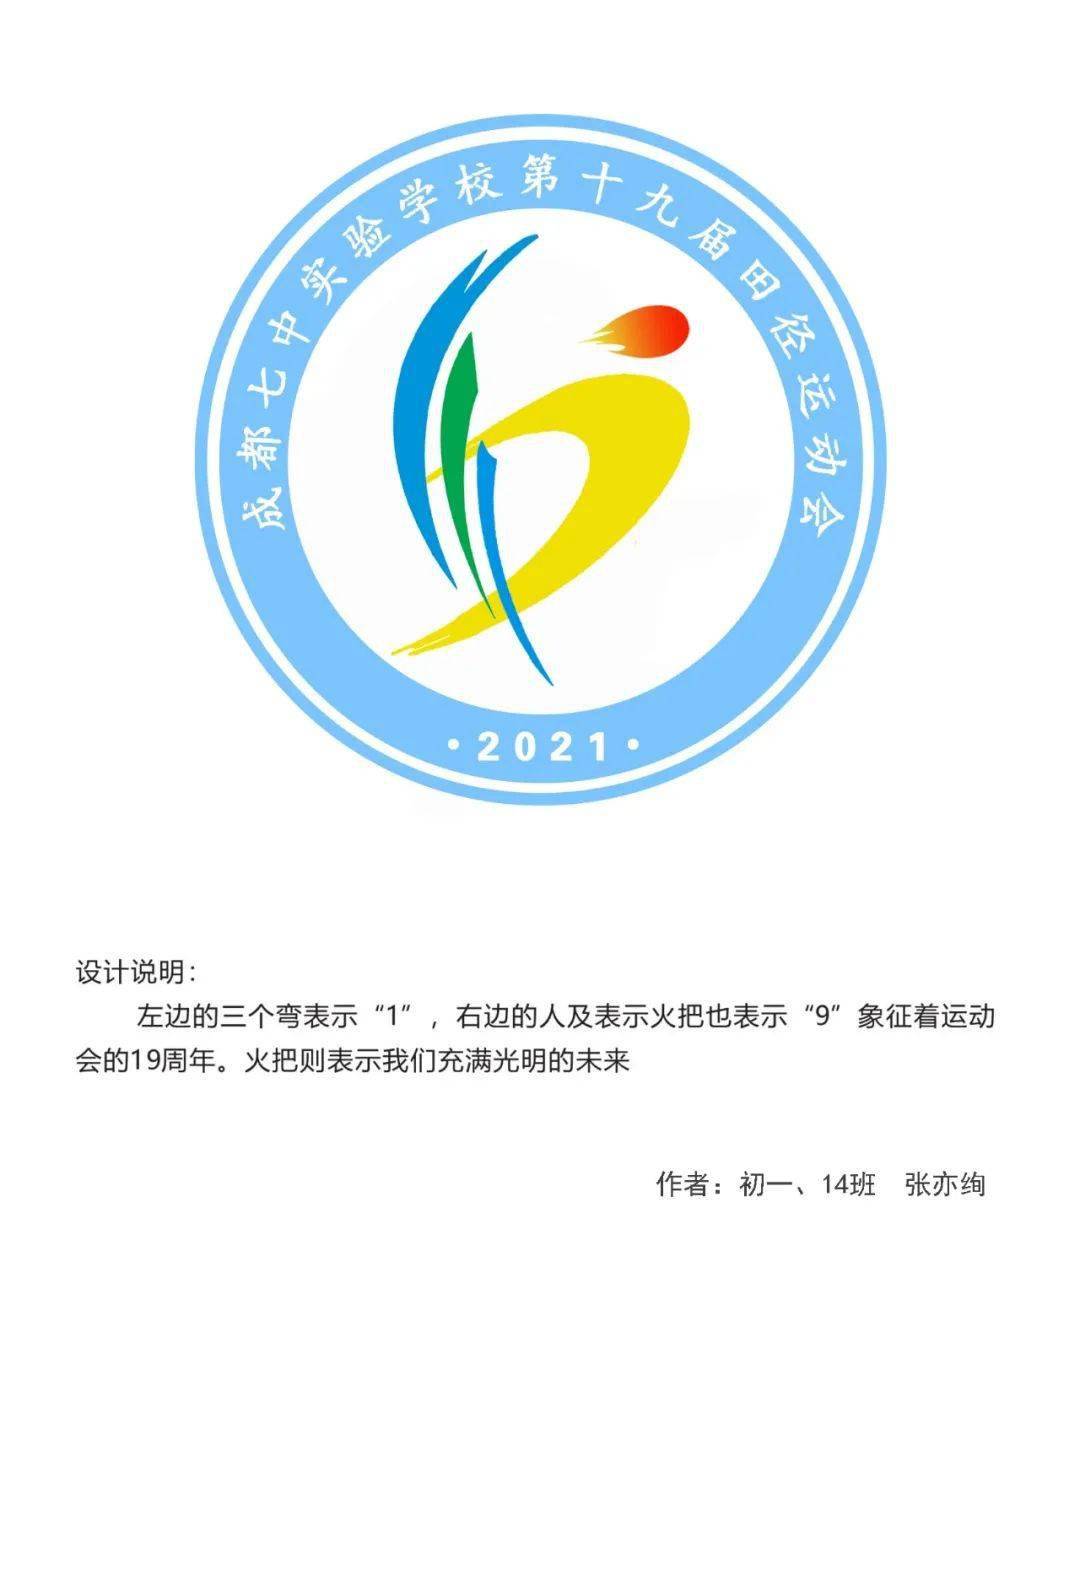 会徽投票 | 2021"冠城杯"体育文化节暨第19届田径运动